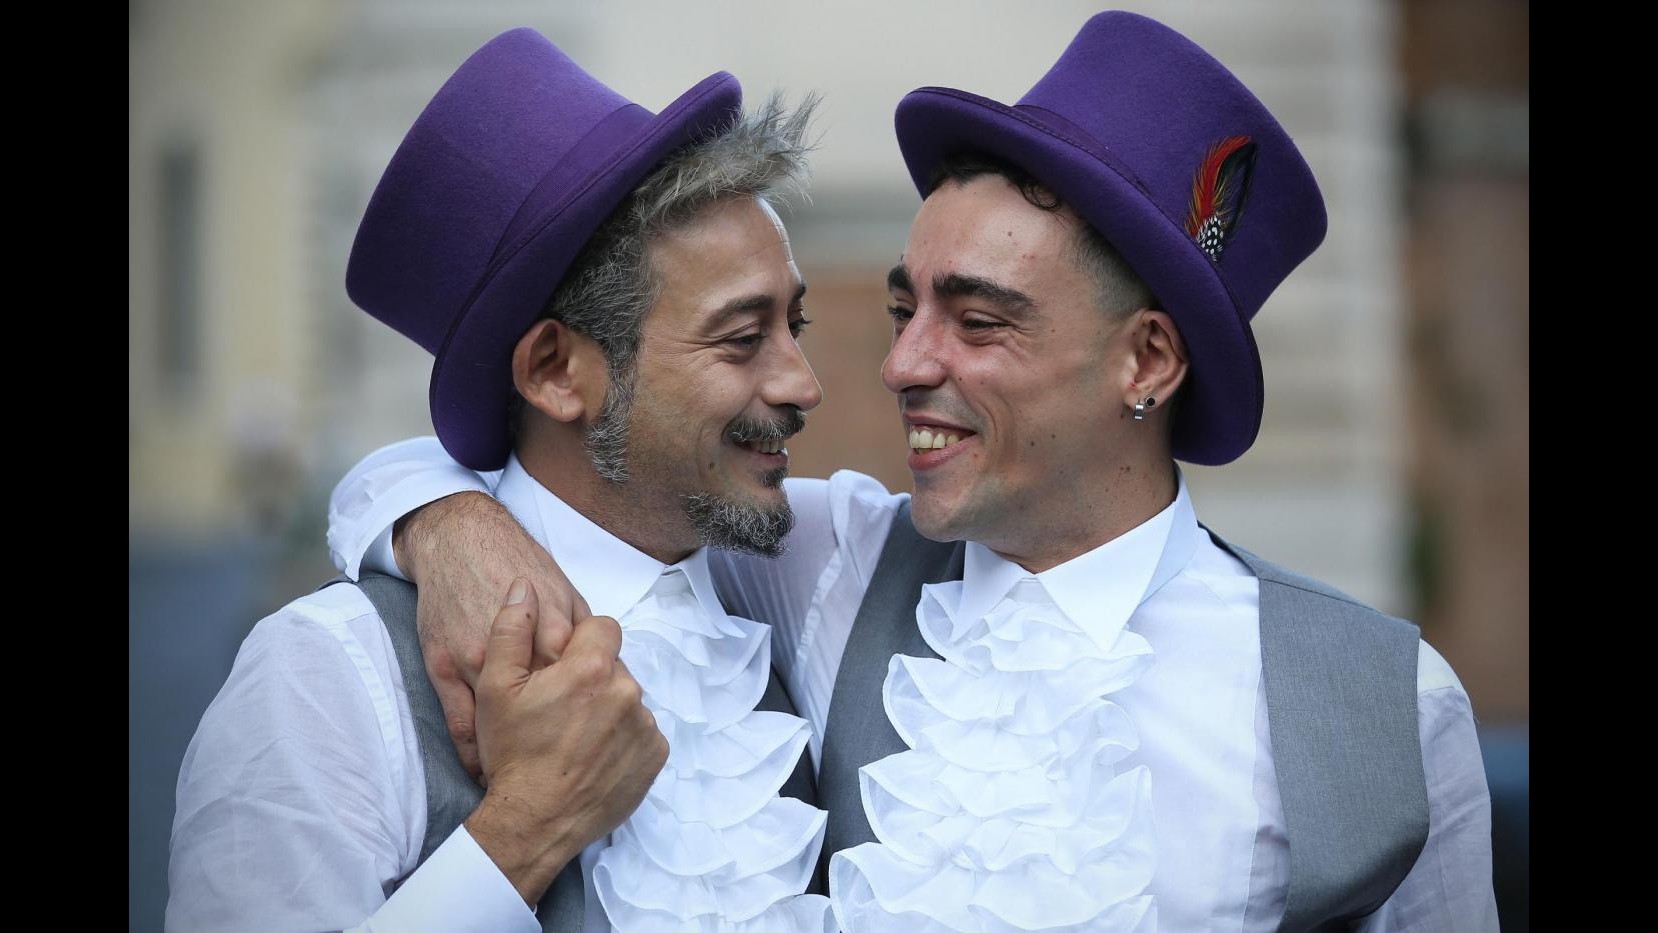 FOTO Raggi celebra prima unione civile in Campidoglio